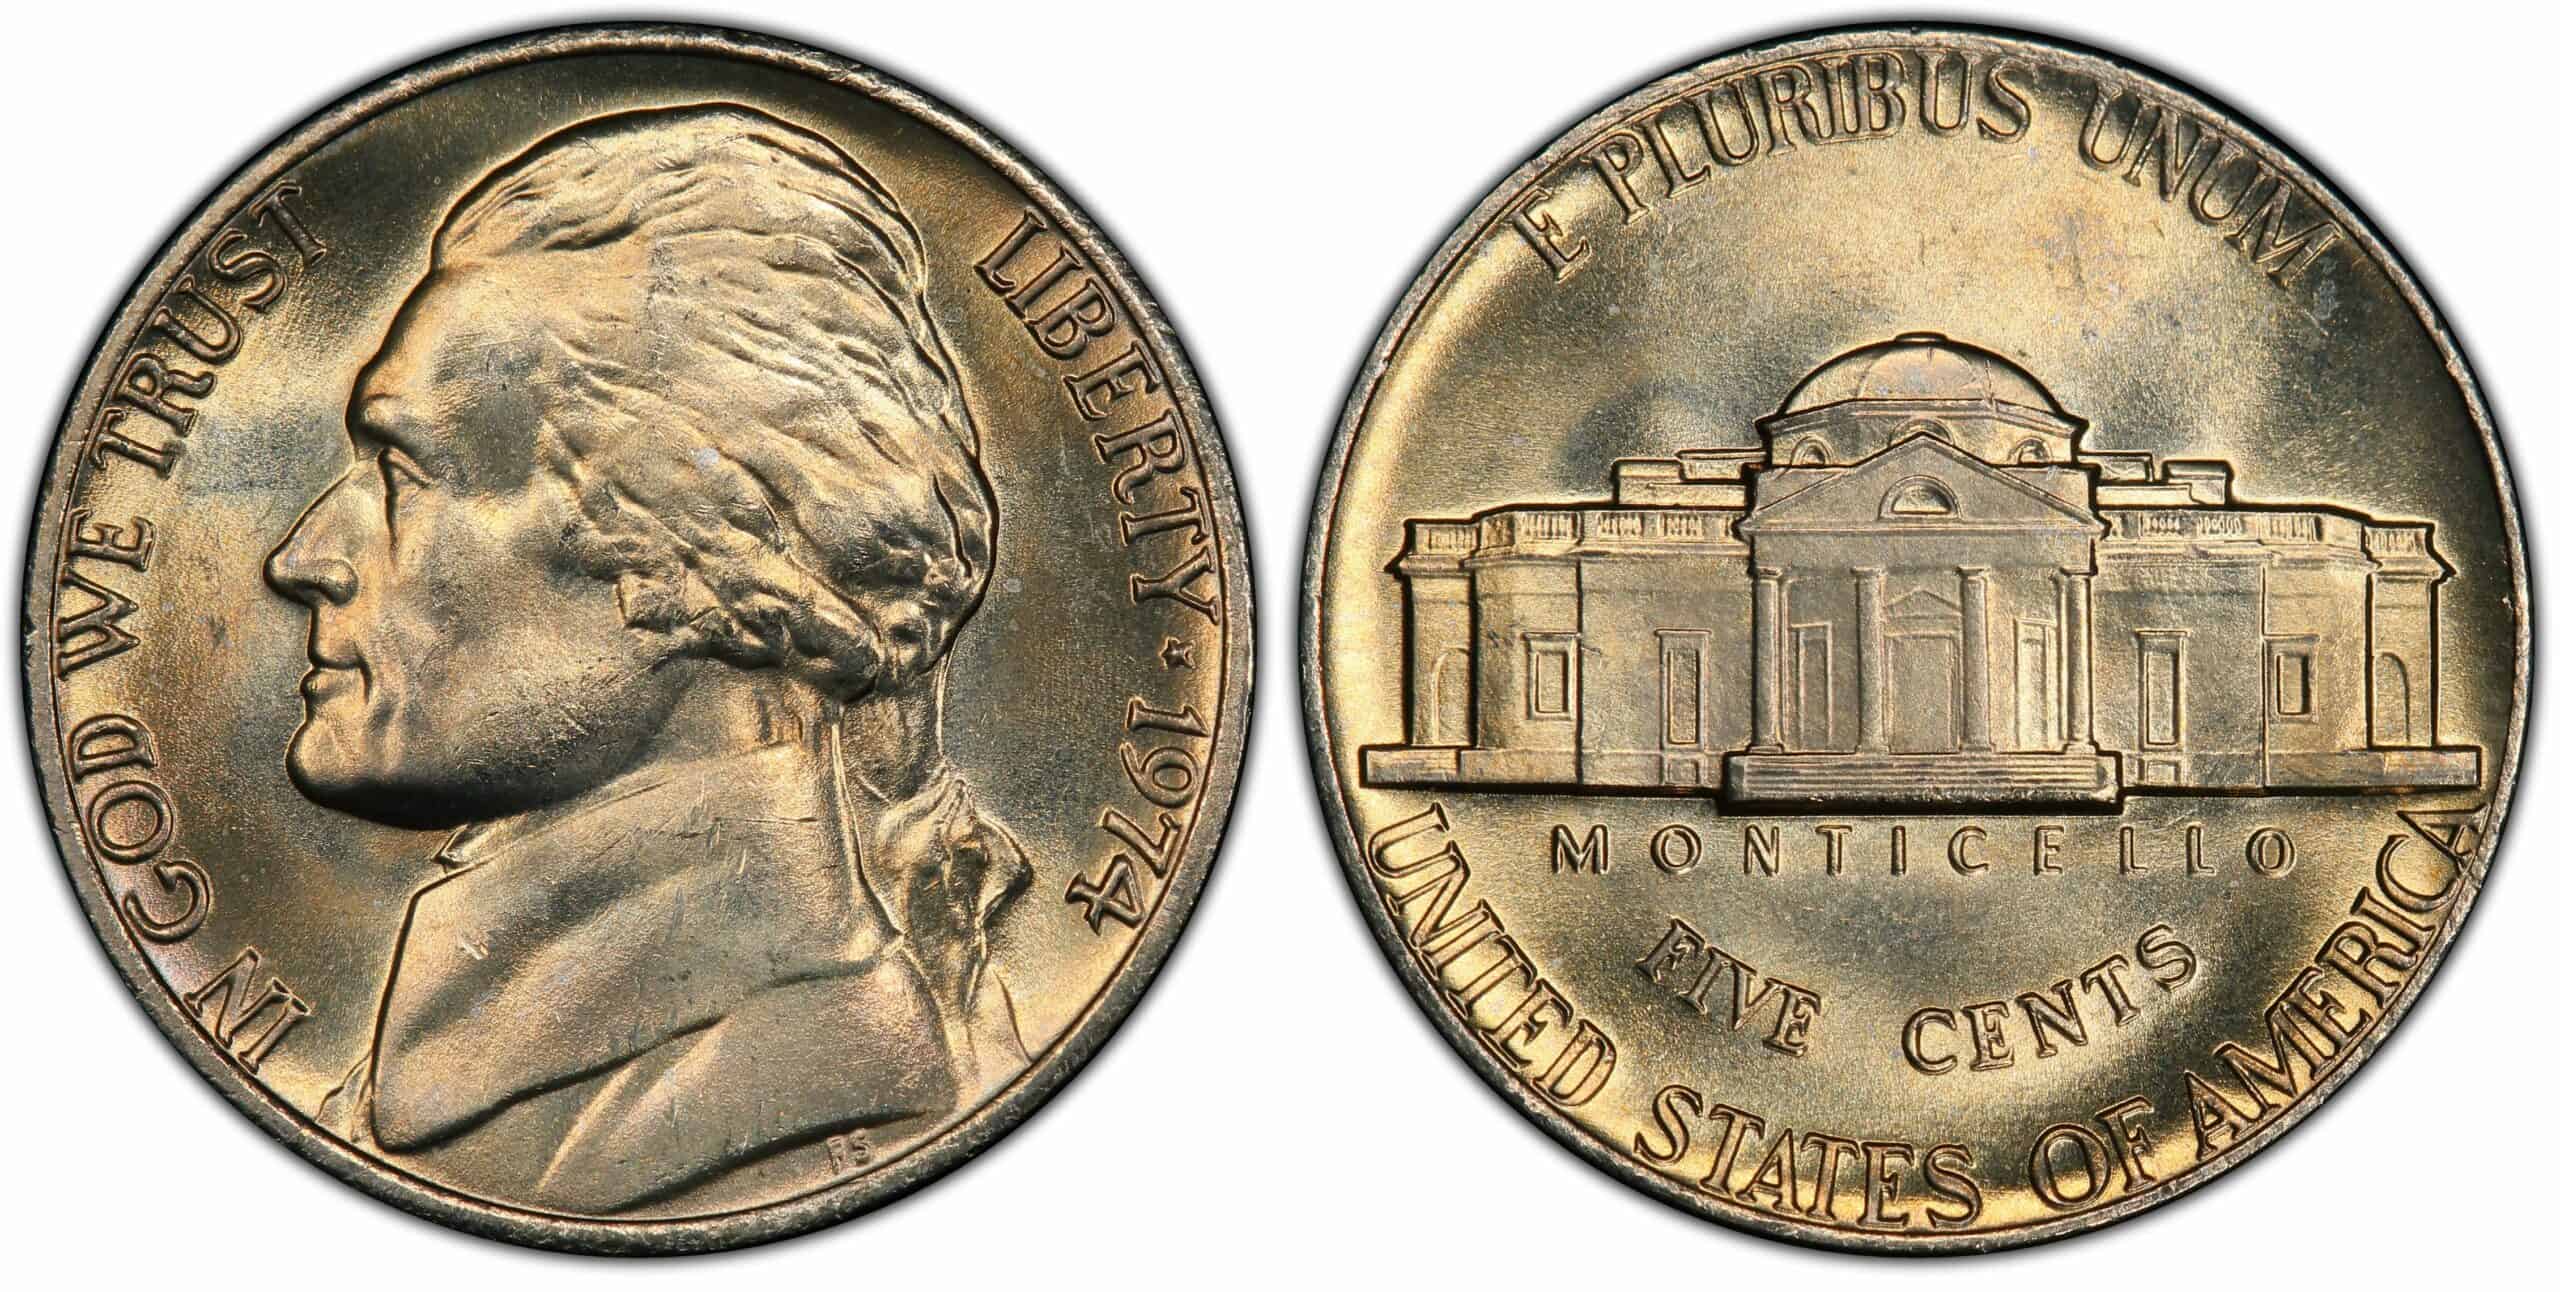 1974 No Mint Mark Nickel Value